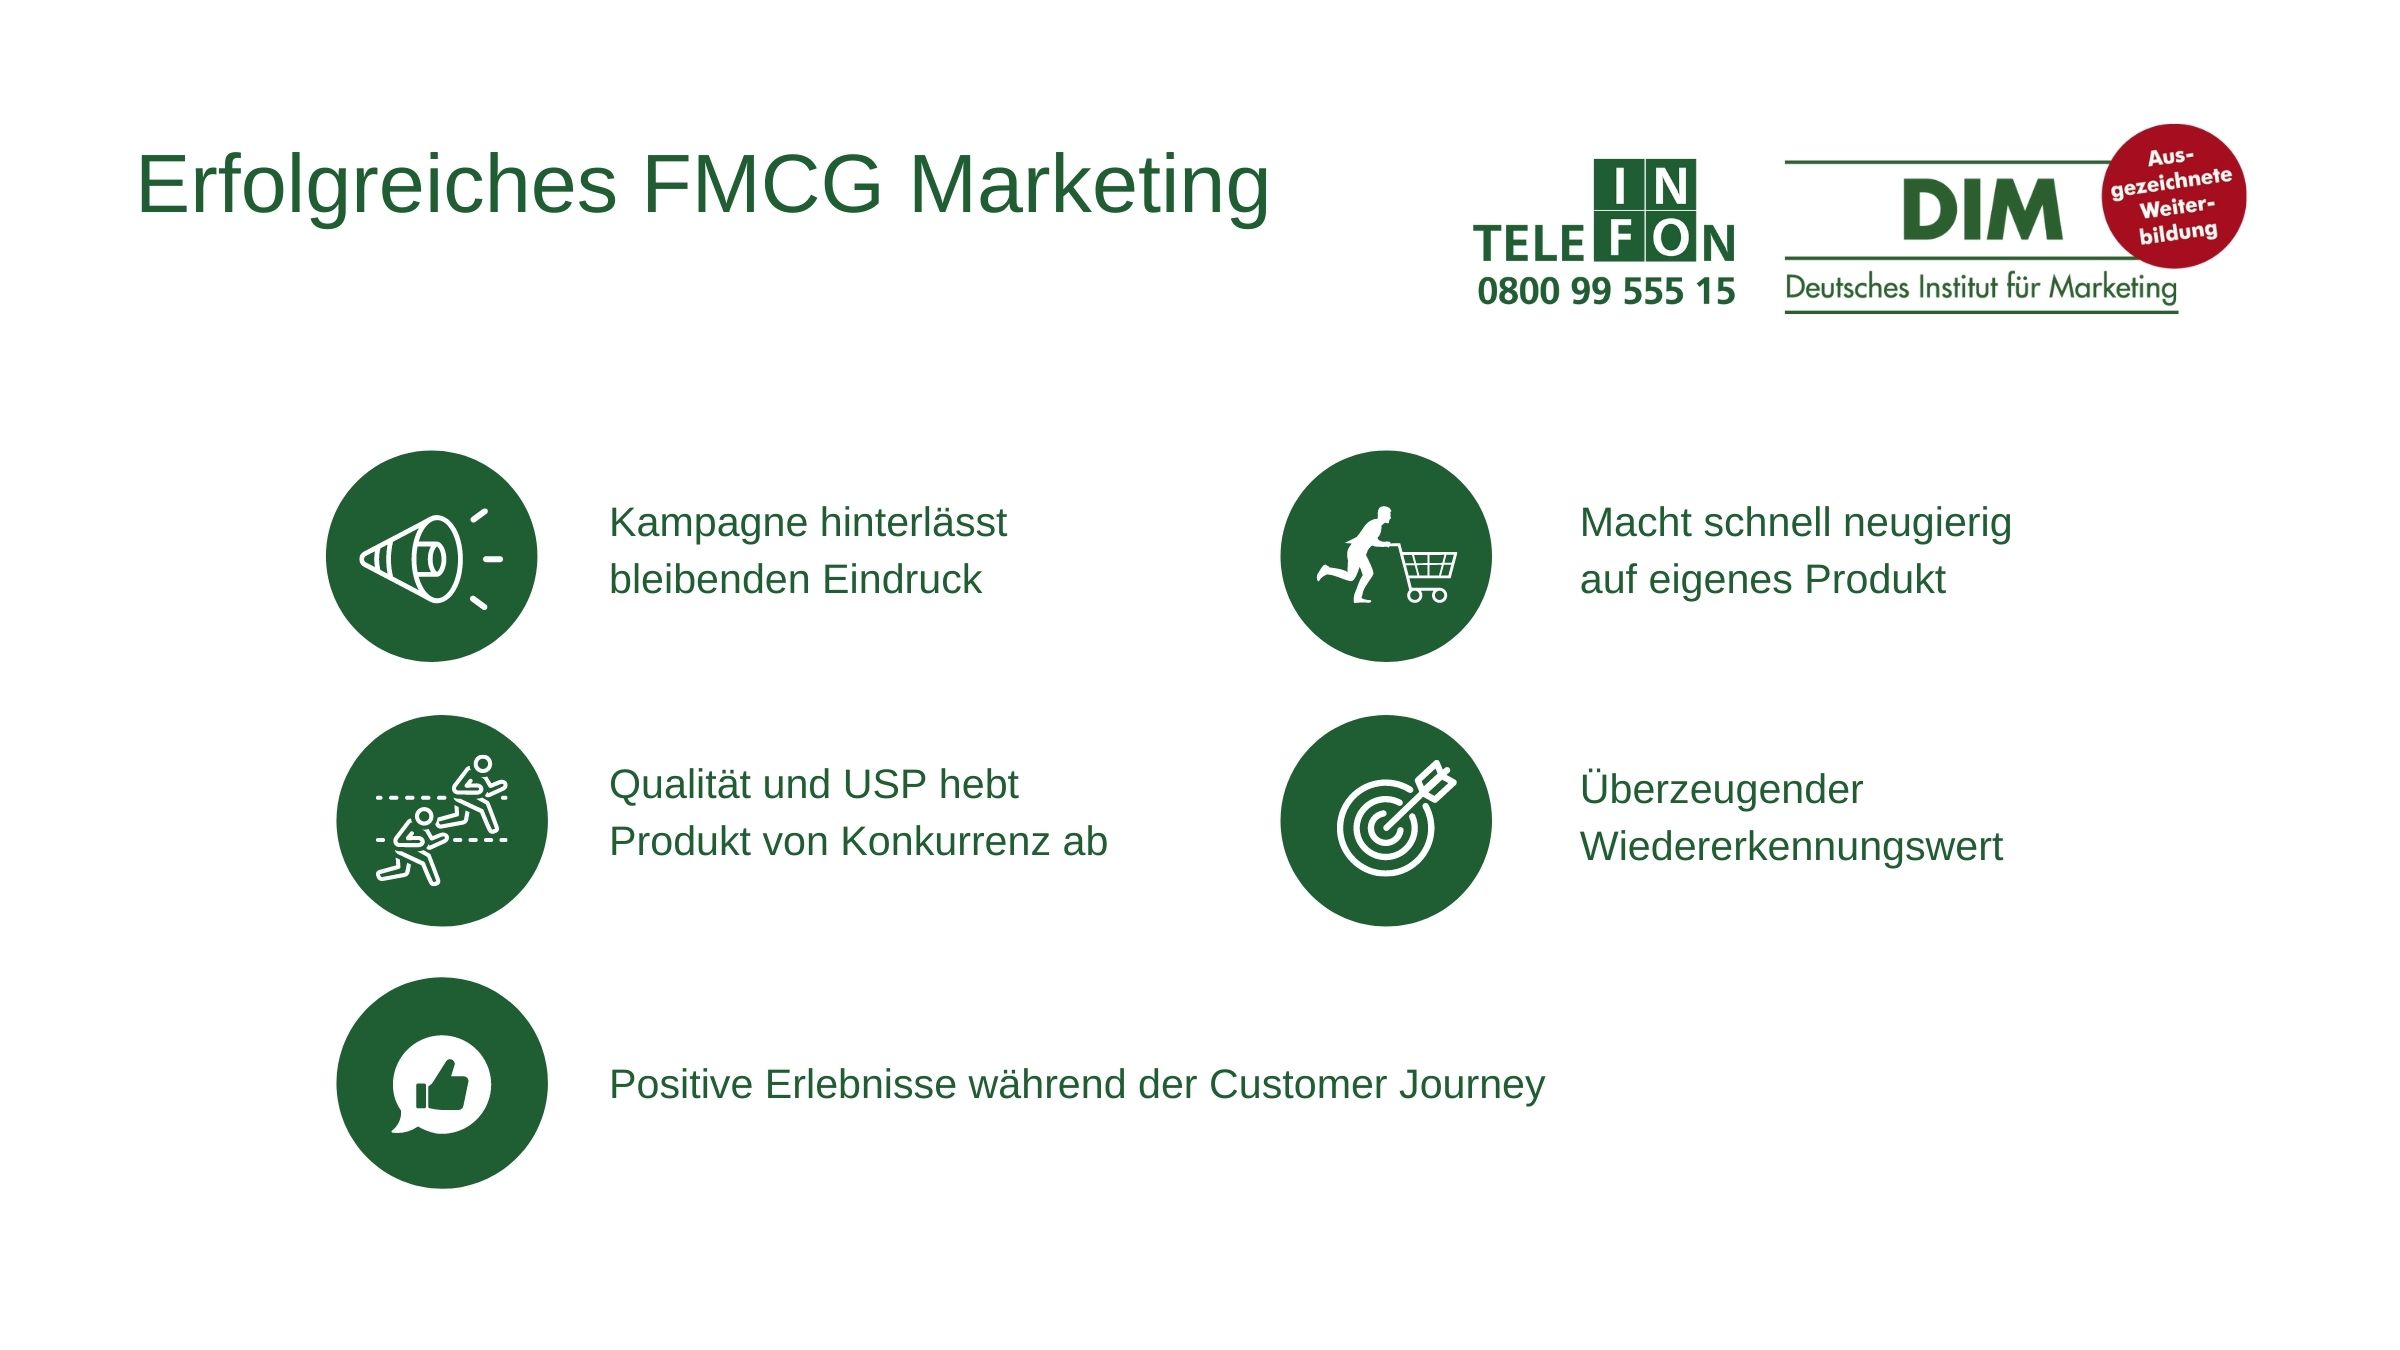 Erfolgreiches FMCG Marketing